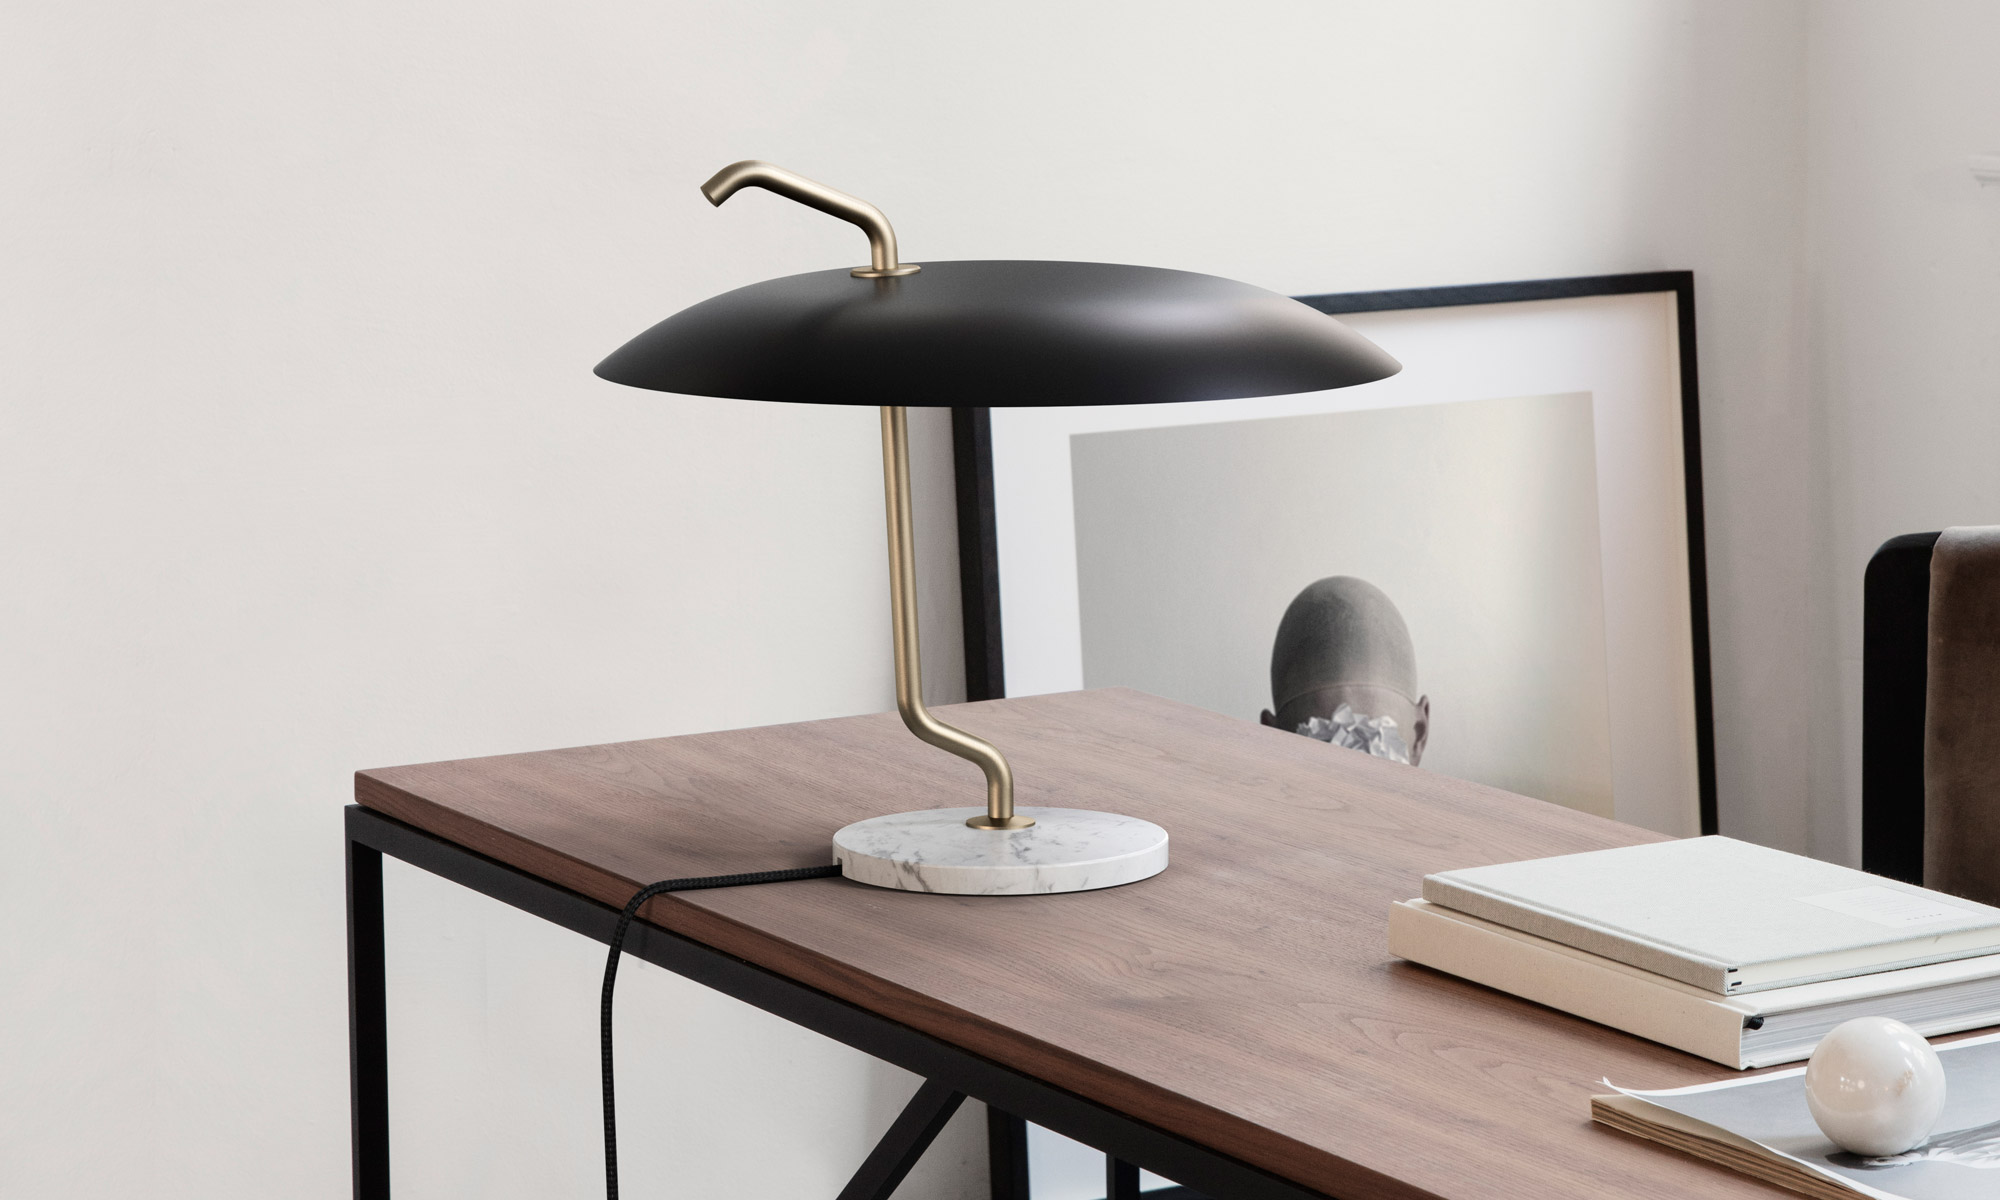 Voorkeur breed natuurlijk Model 537 lamp Design Gino Sarfatti voor Astep - Smukdesign